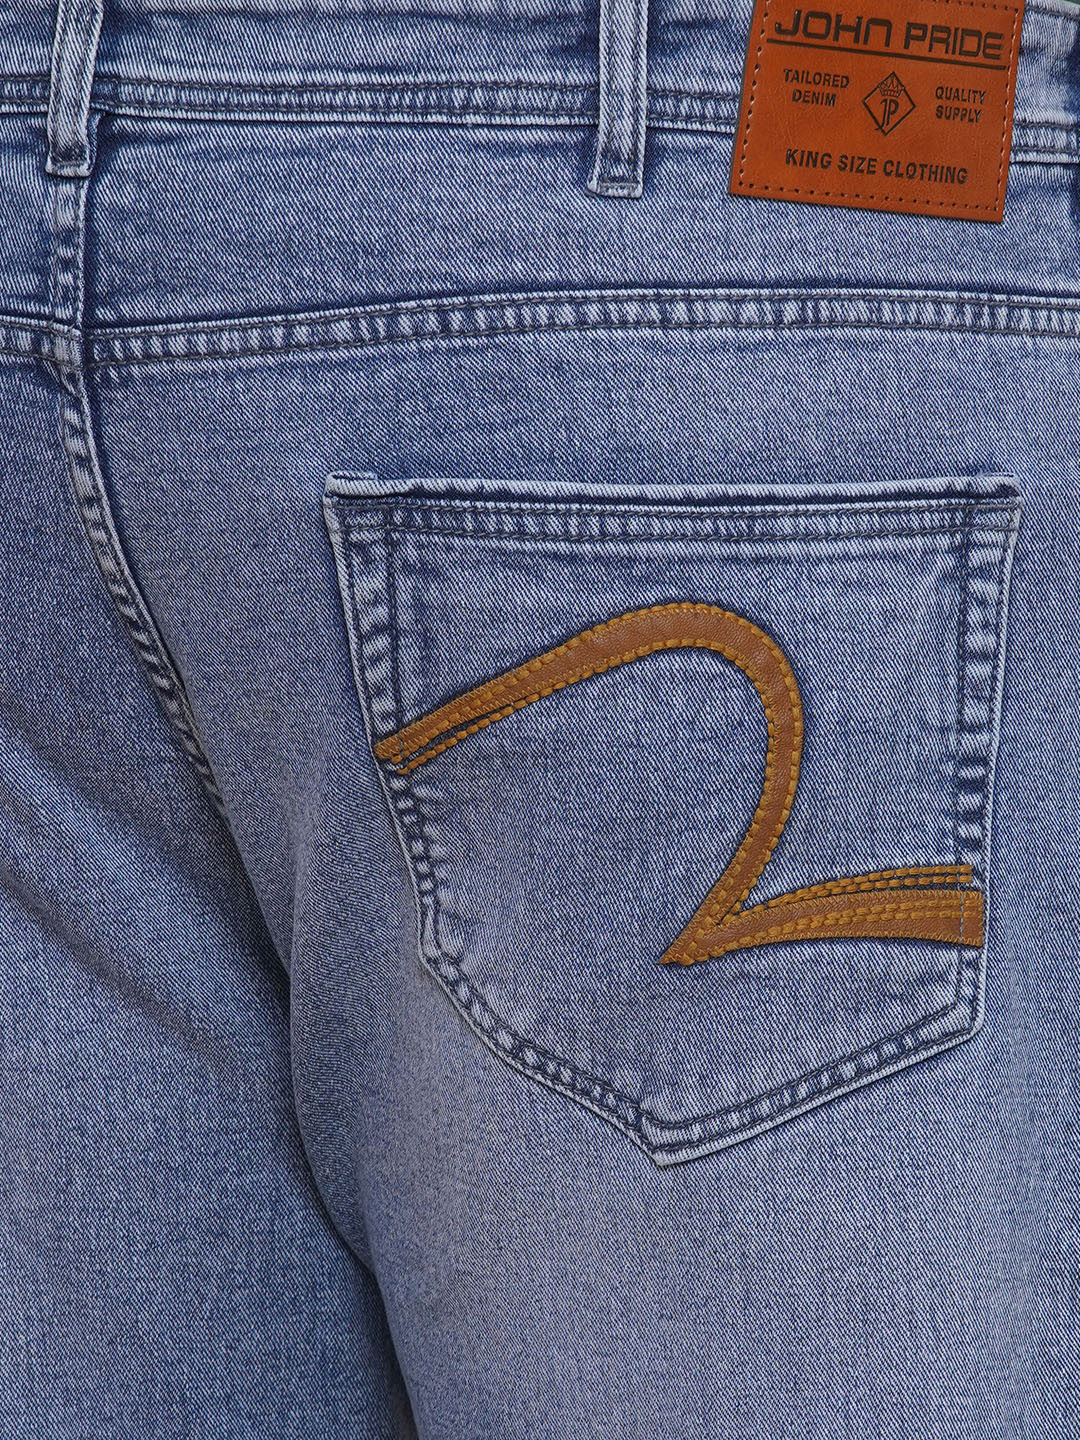 bottomwear/jeans/EJPJ25081/ejpj25081-2.jpg